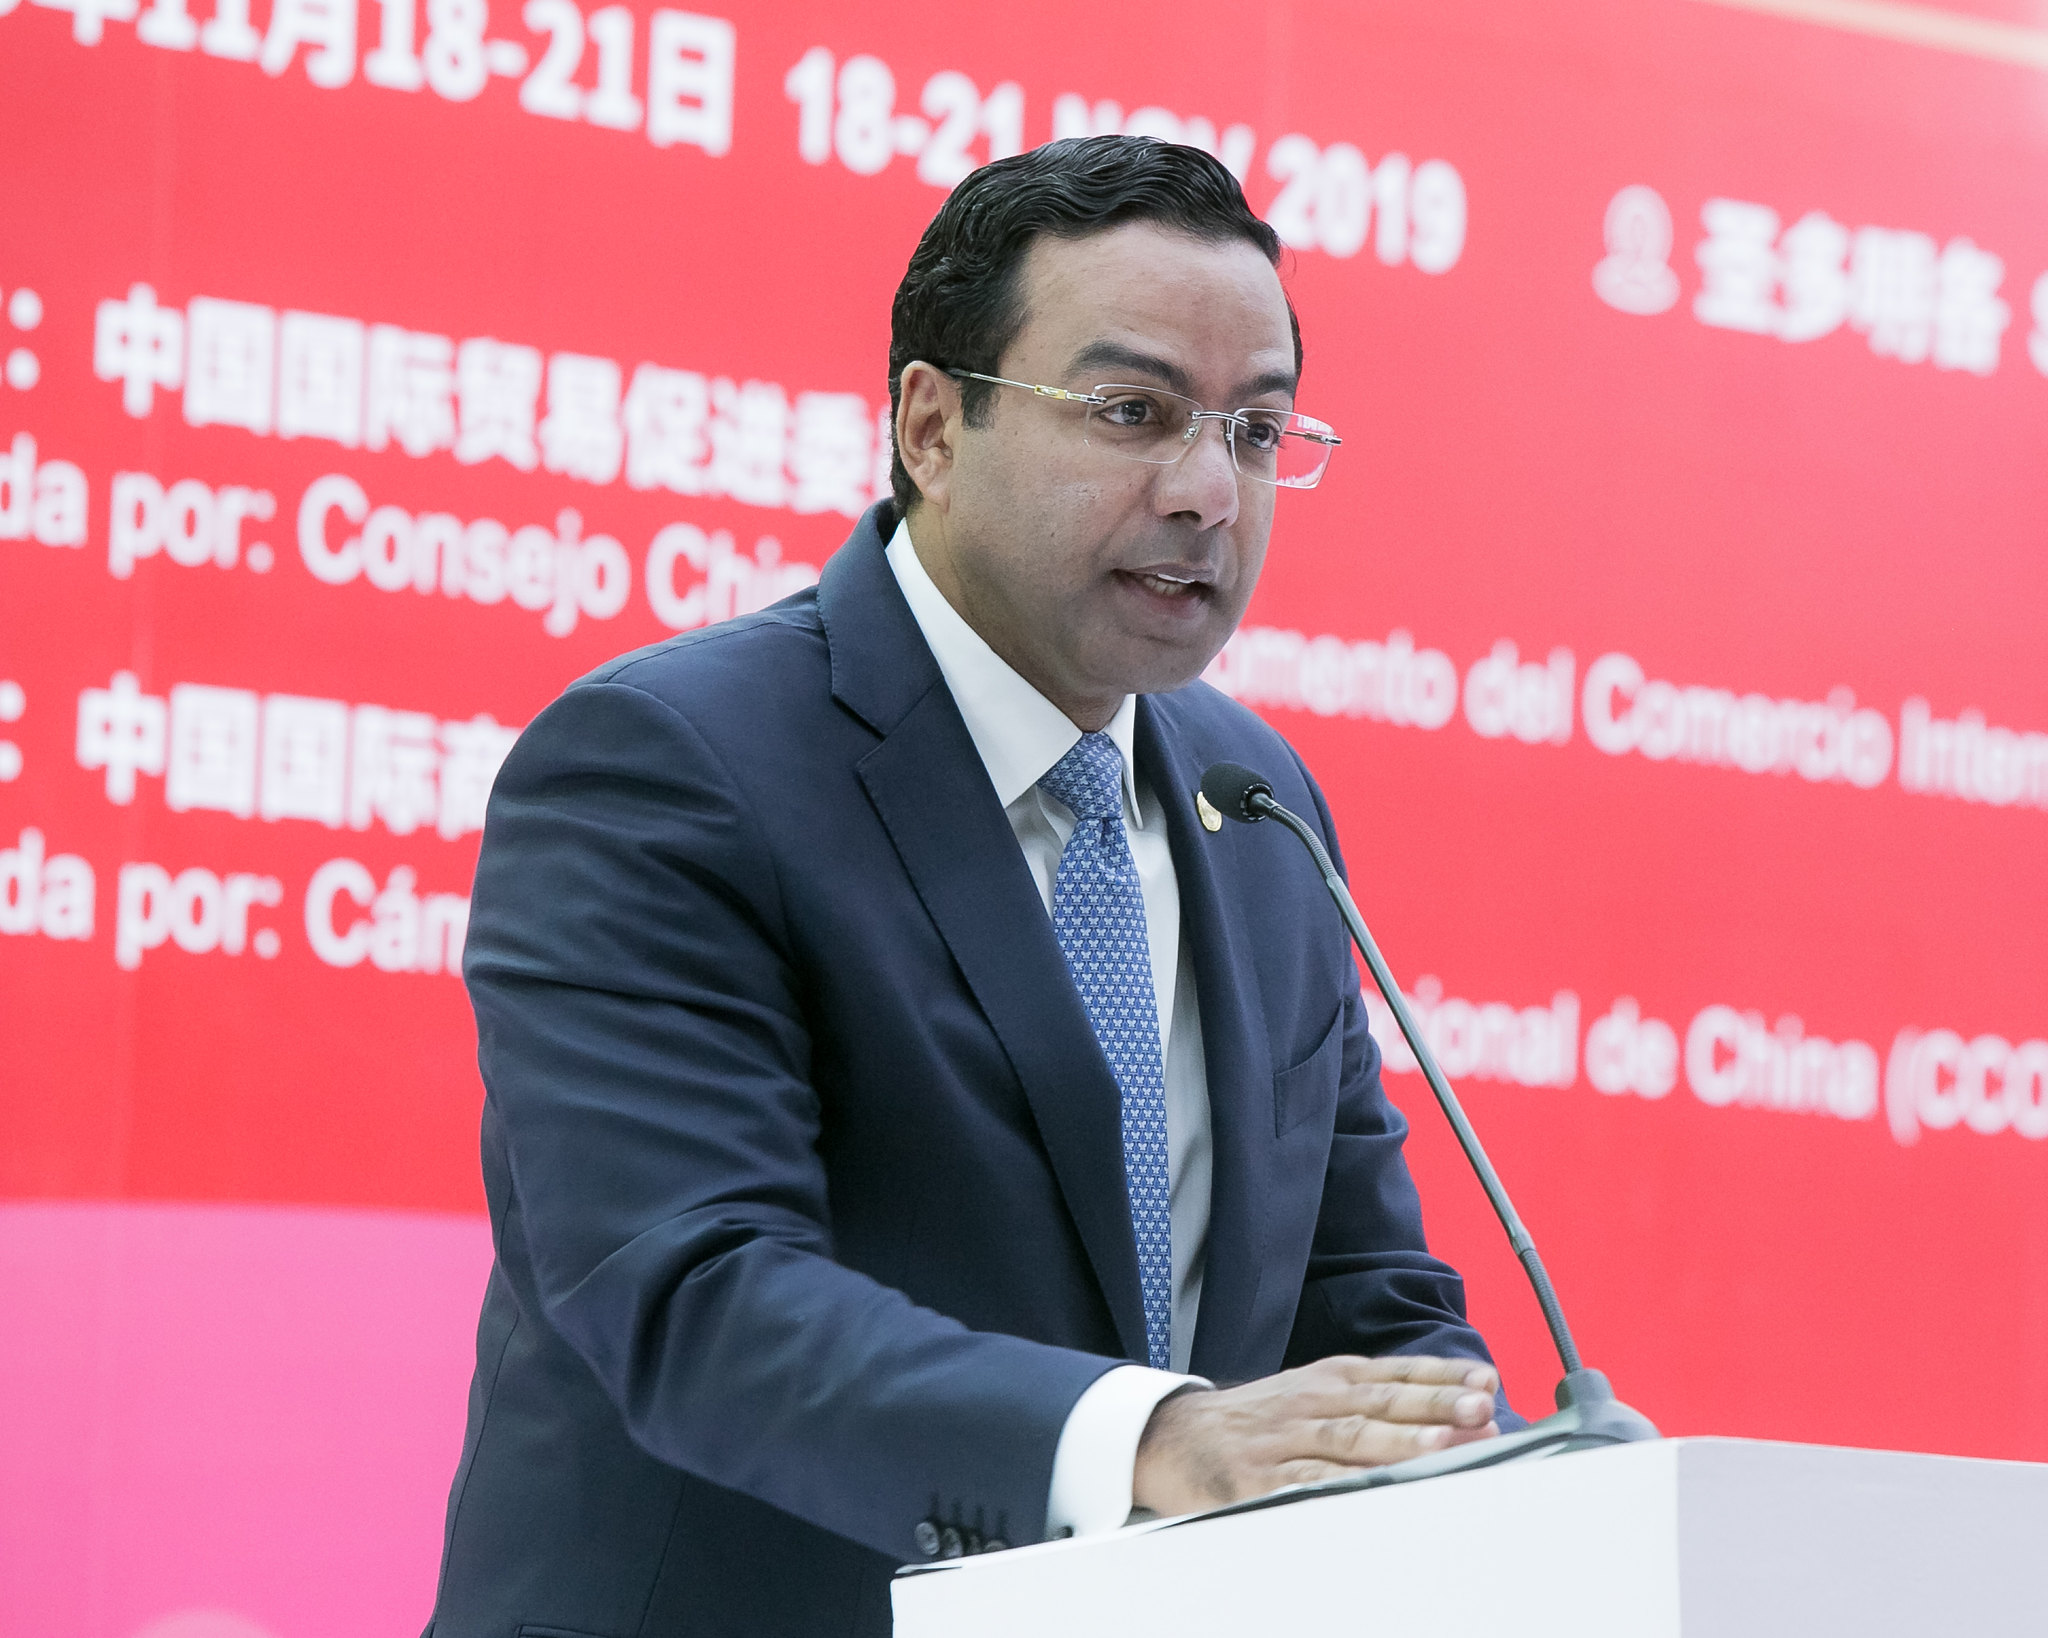 REPÚBLICA DOMINICANA: República Dominicana es el mayor socio comercial de China en la región del Caribe: director del Cei-RD